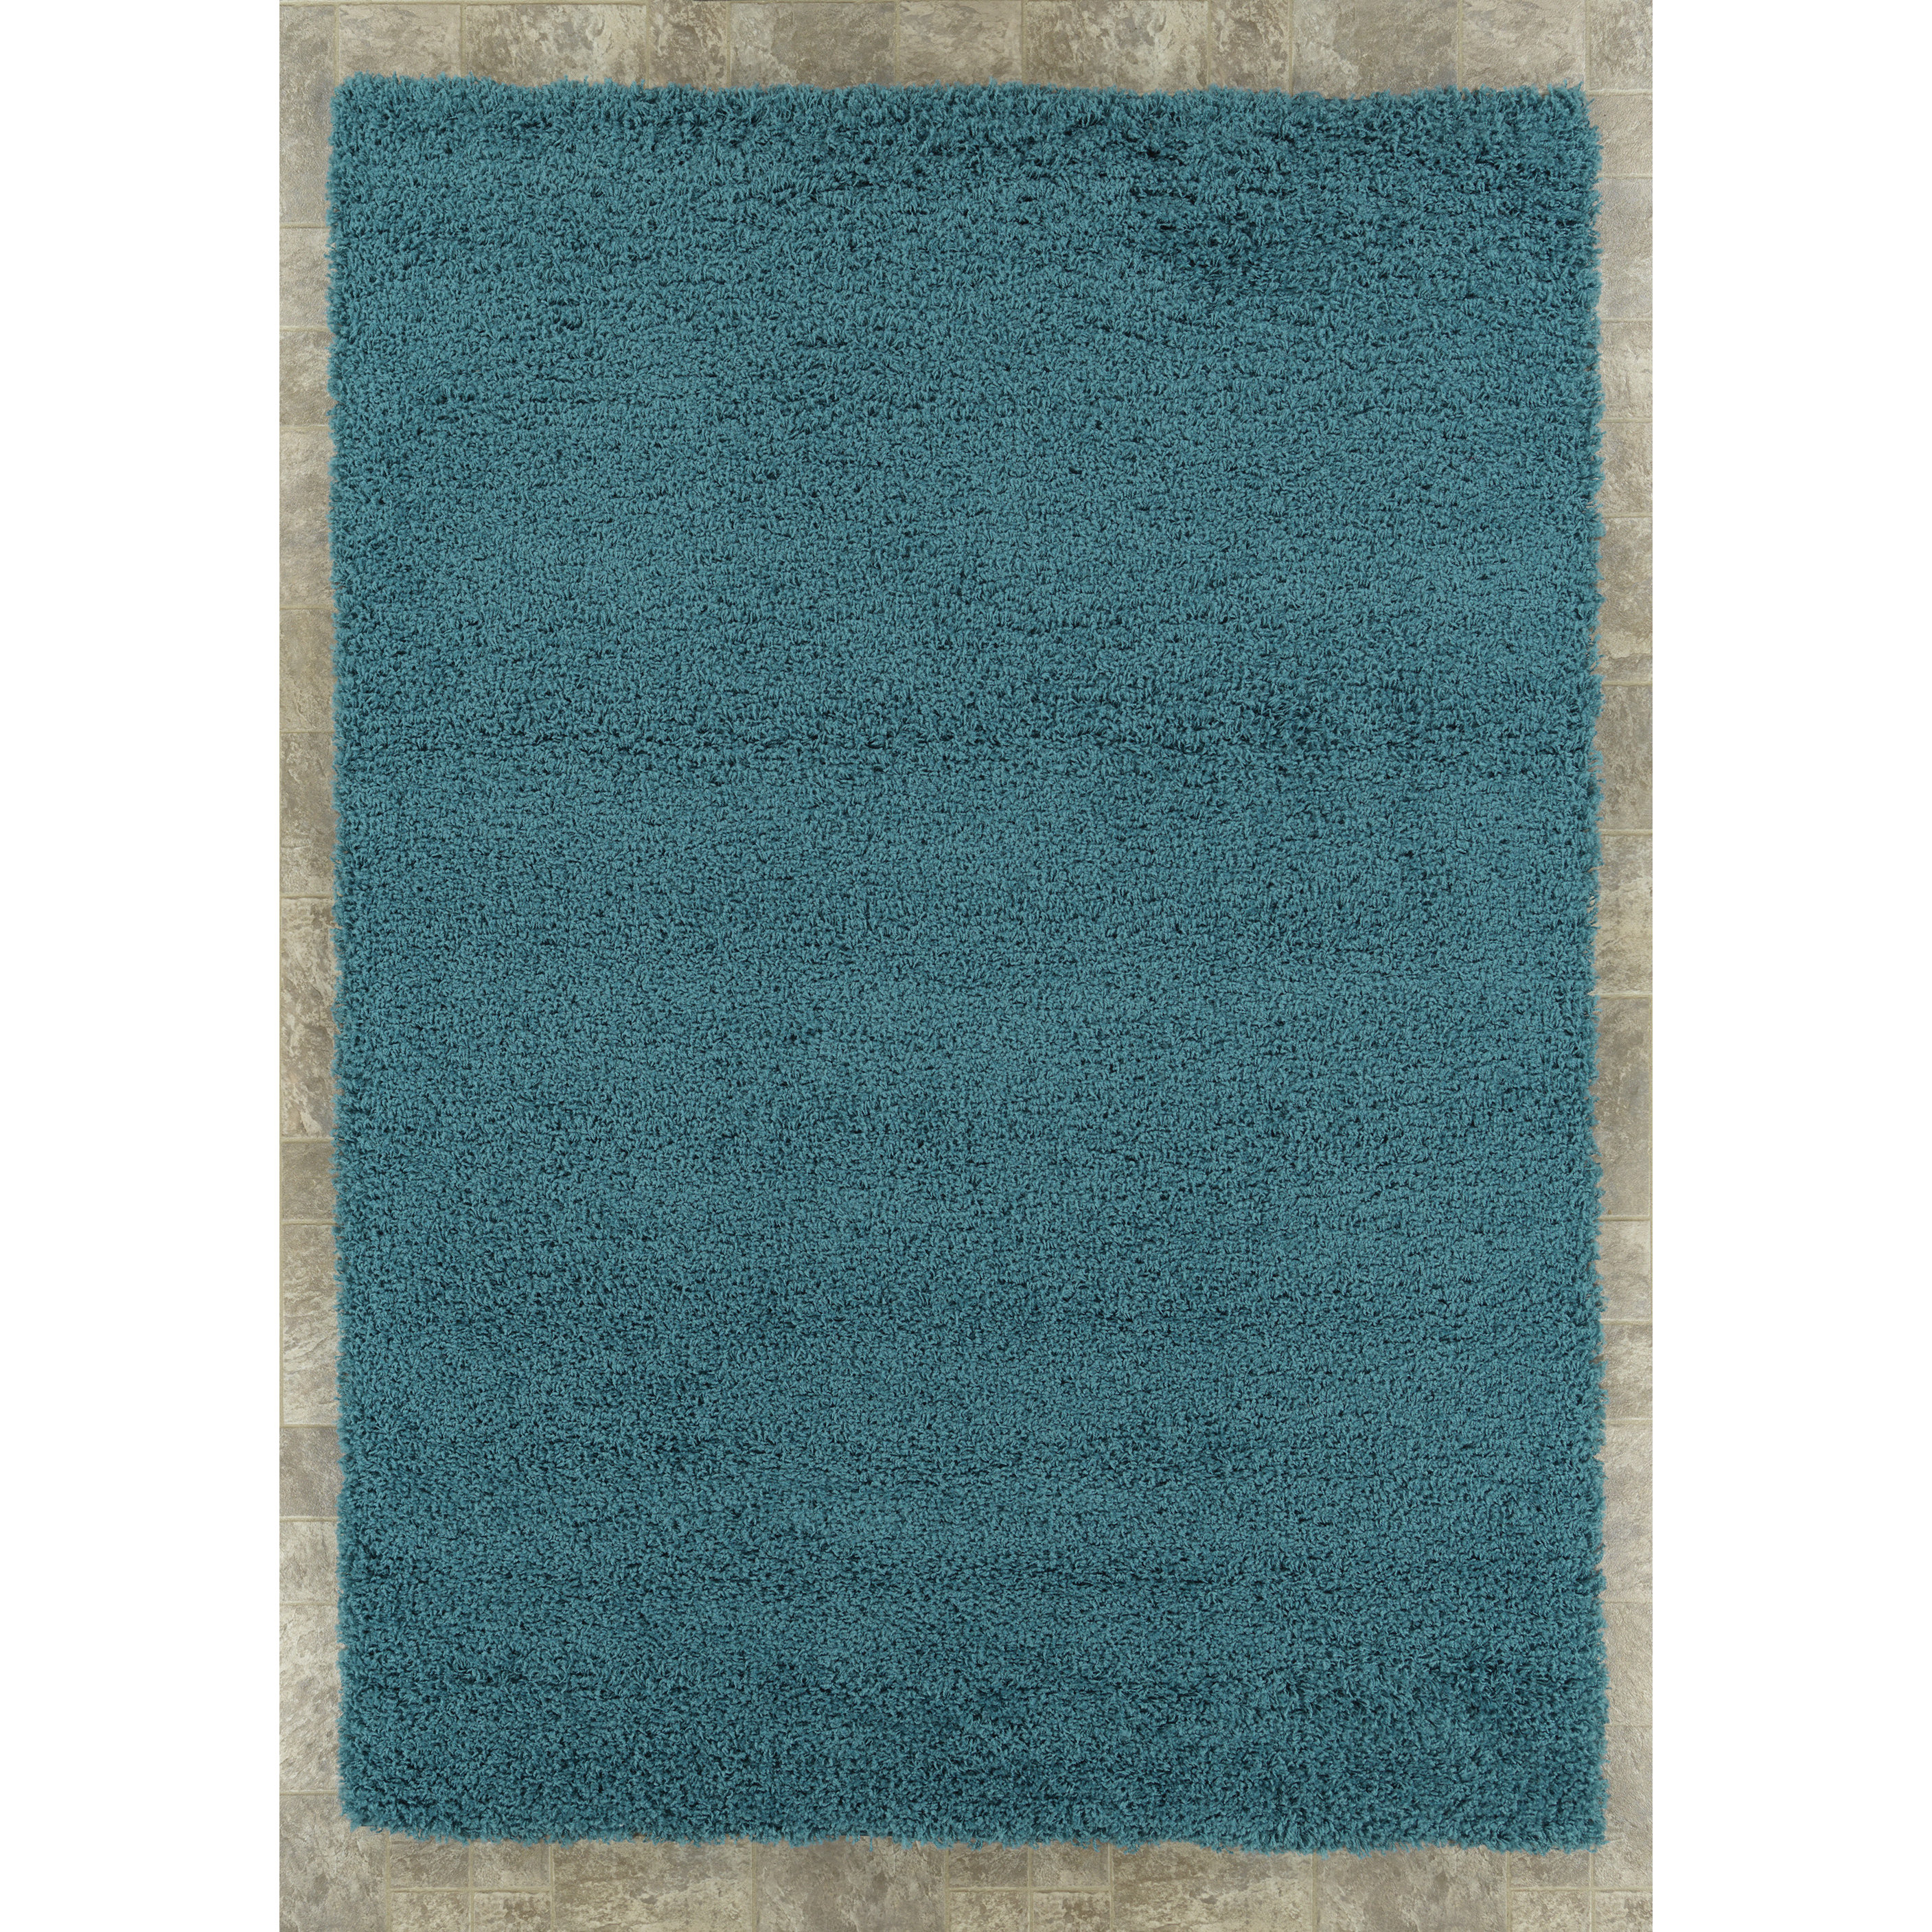 Ottomanson Turquoise Blue Shaggy Area Rug & Reviews | Wayfair